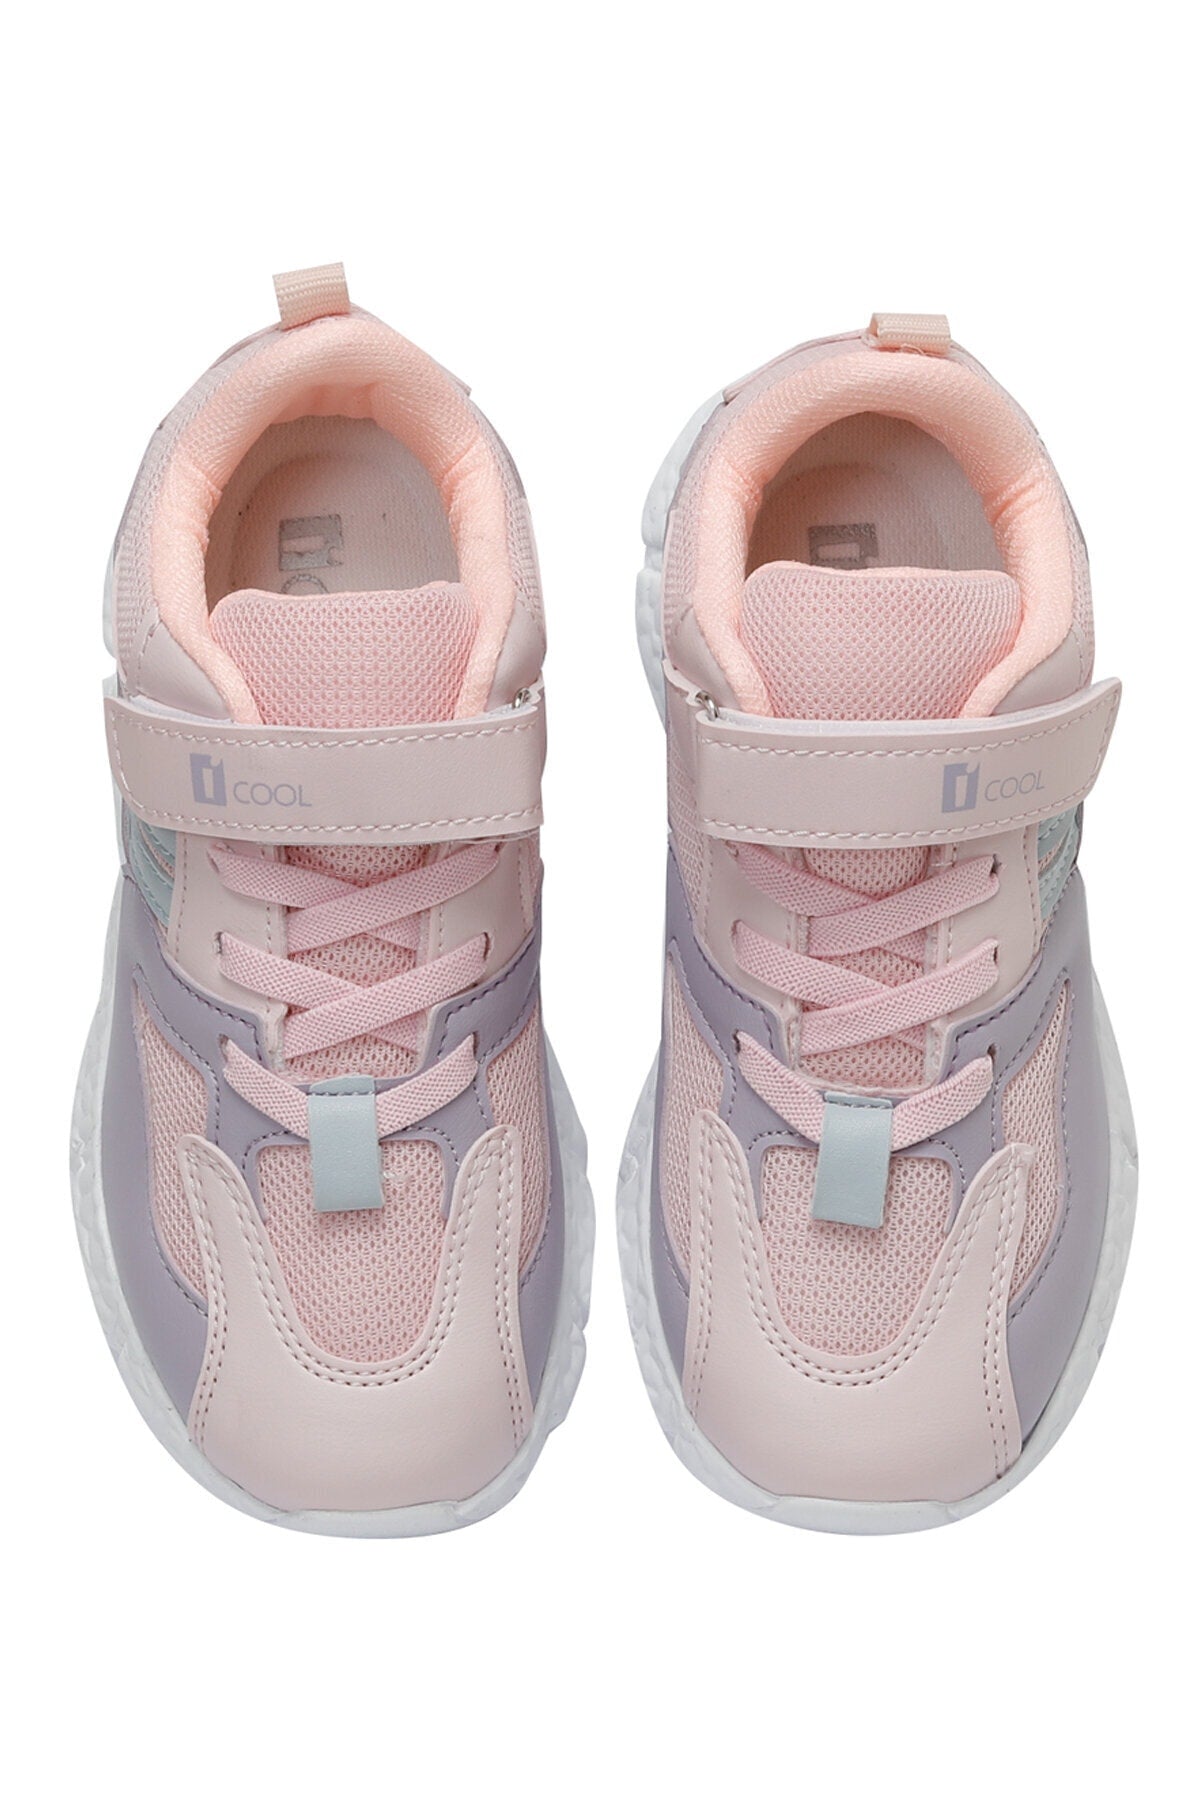 VEGA 3FX Pink Girls' Sneakers